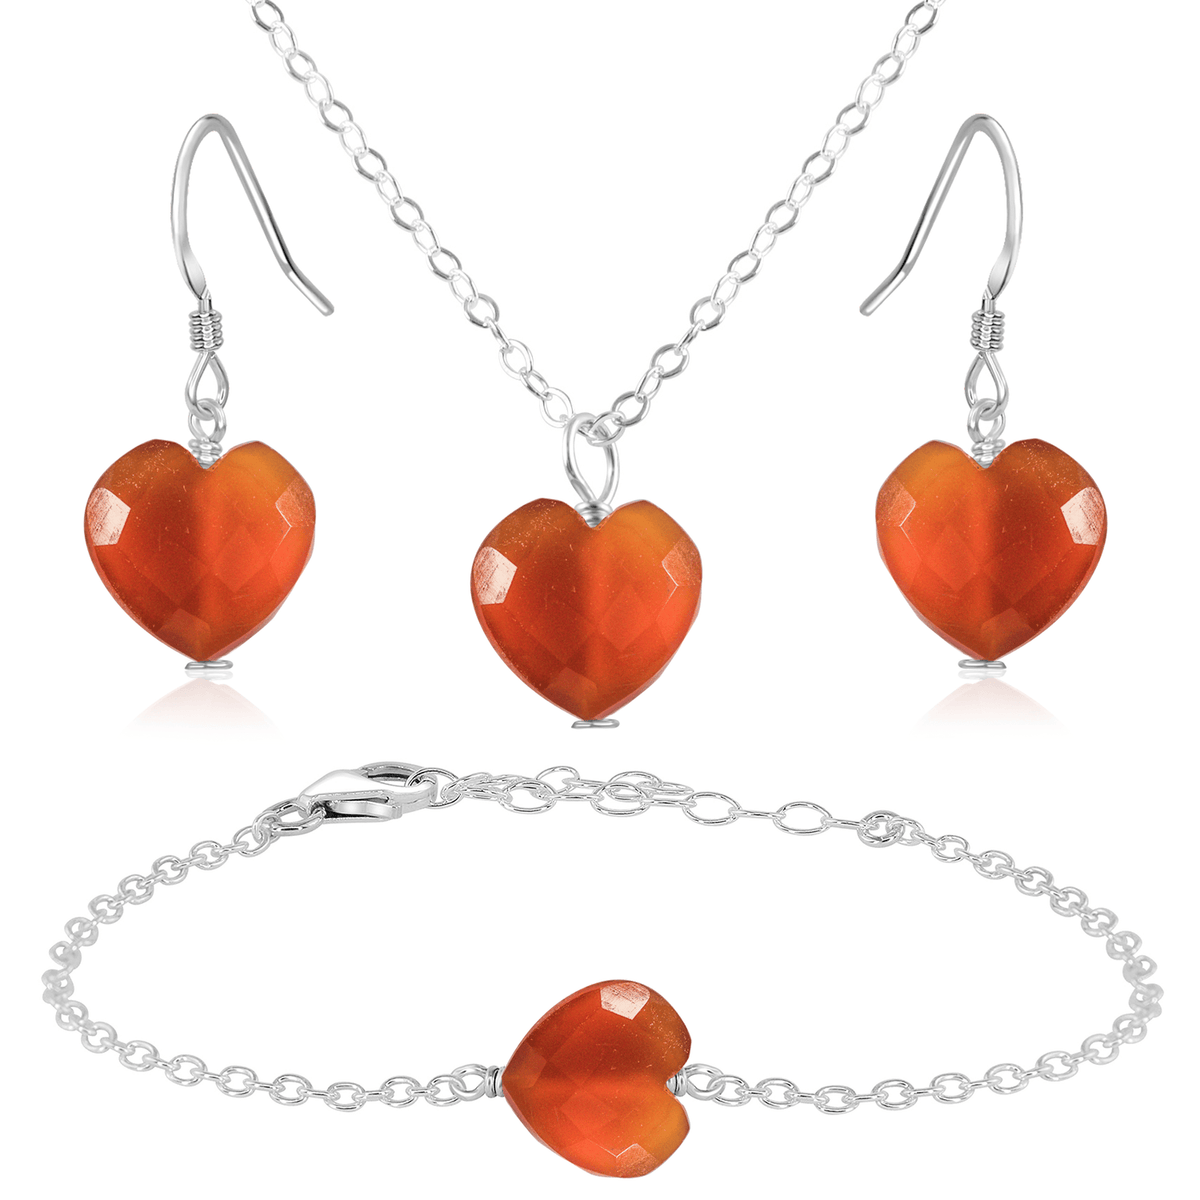 Carnelian Crystal Heart Jewellery Set - Carnelian Crystal Heart Jewellery Set - Sterling Silver / Cable / Necklace & Earrings & Bracelet - Luna Tide Handmade Crystal Jewellery